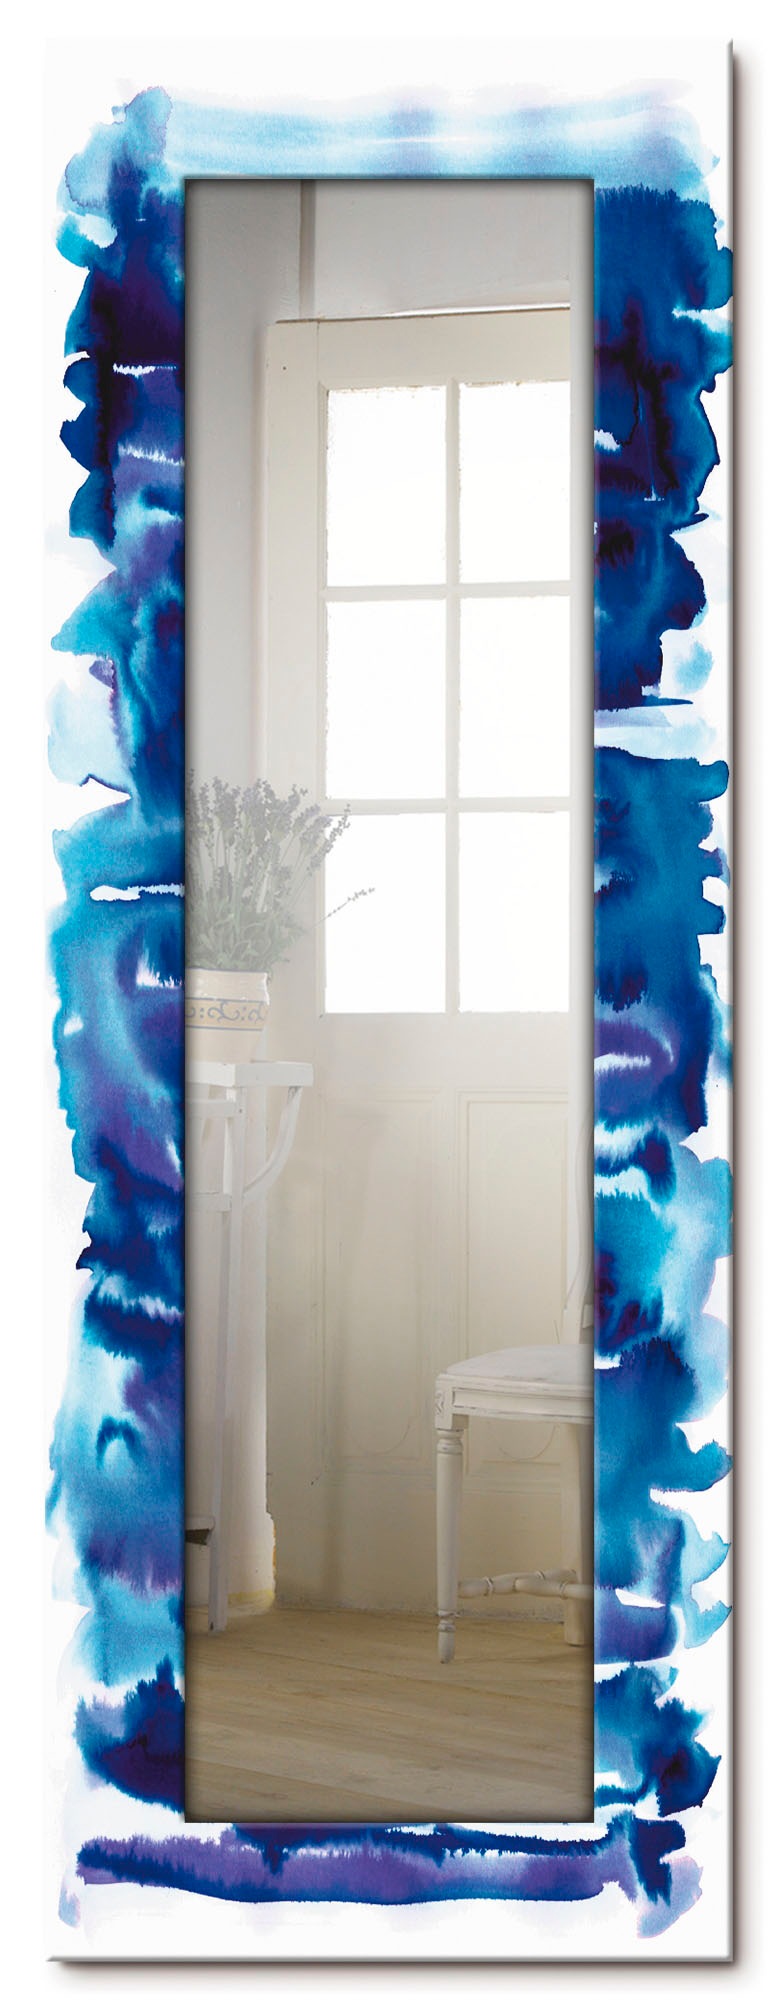 Artland Dekospiegel »Aquarell in blau«, gerahmter Ganzkörperspiegel, Wandspiegel, mit Motivrahmen, Landhaus